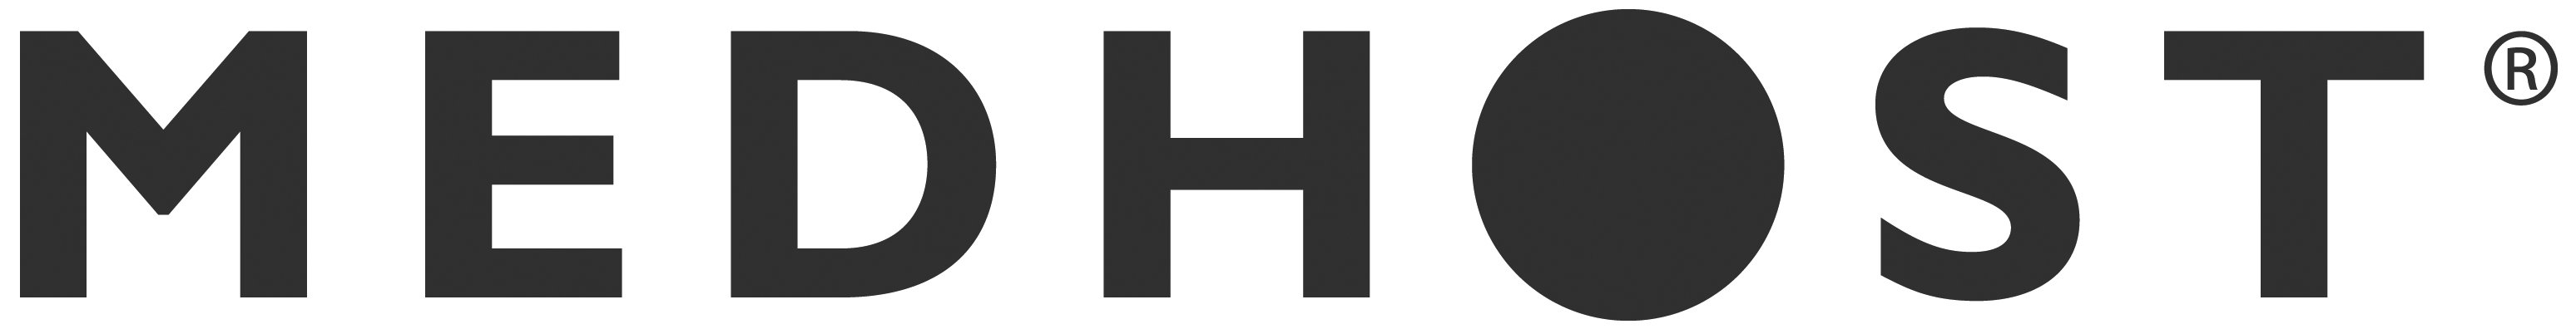 MEDHOST-Logo-Large